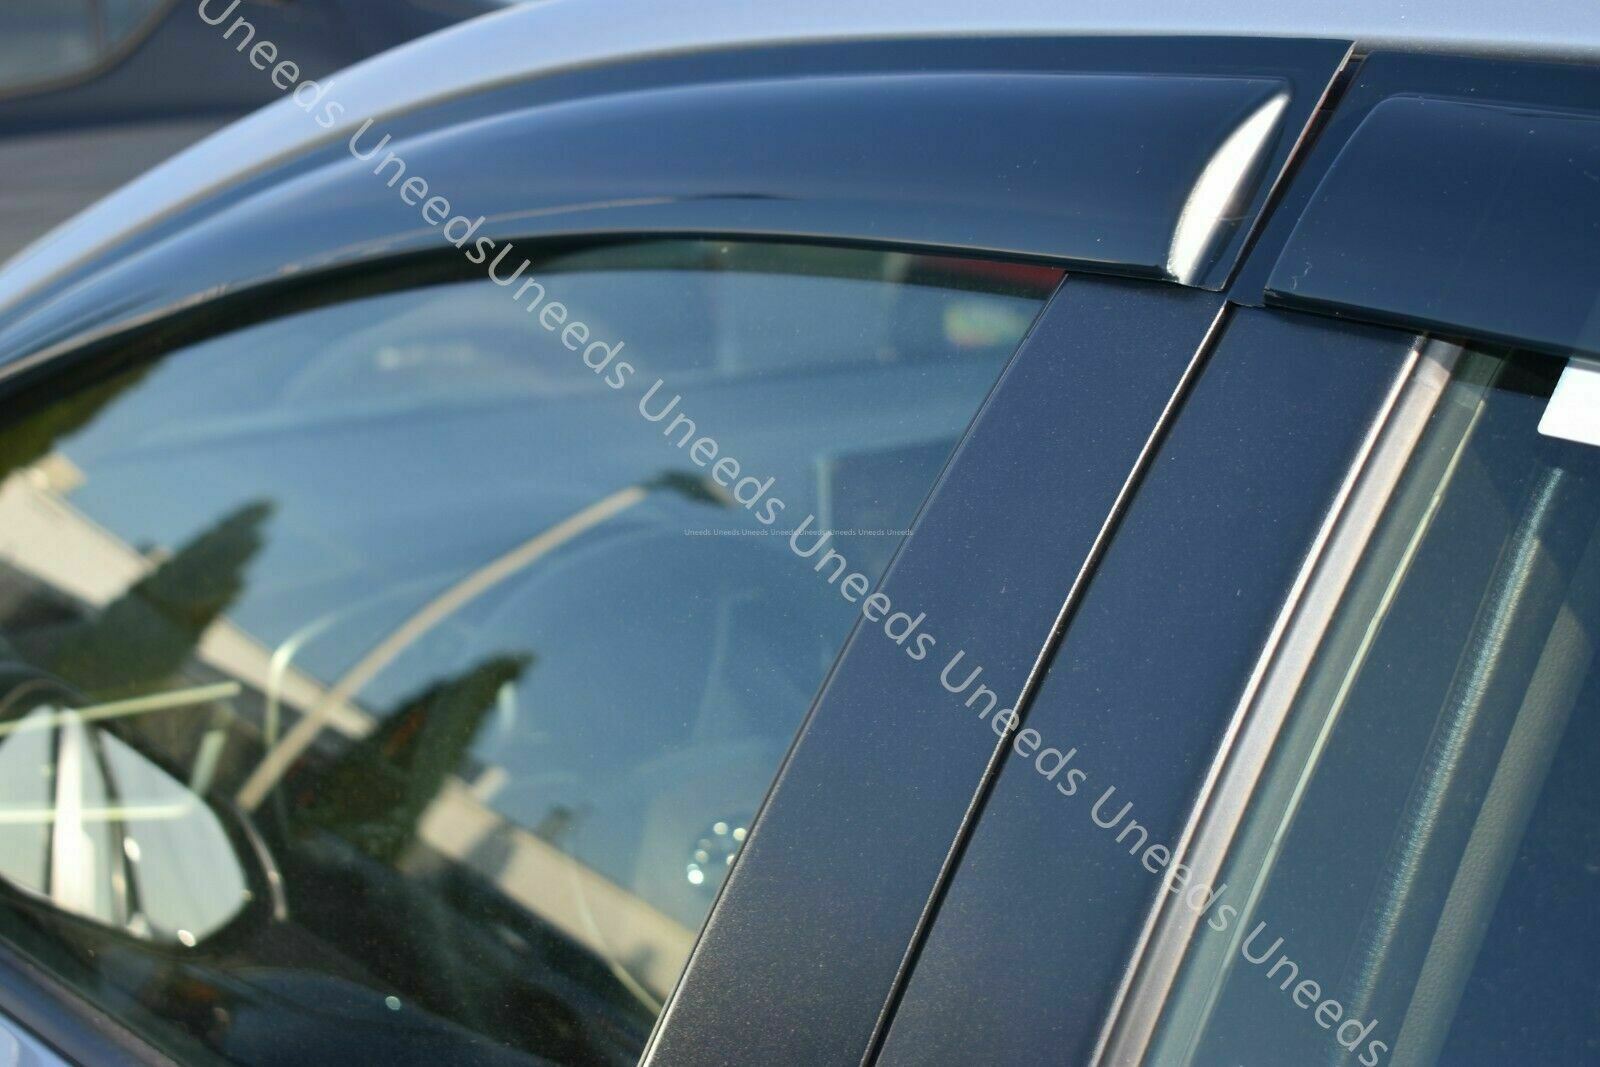 Ajuste 2019-2021 Toyota Corolla Hatchback OE estilo ventilación ventana viseras lluvia sol viento guardias deflectores de sombra